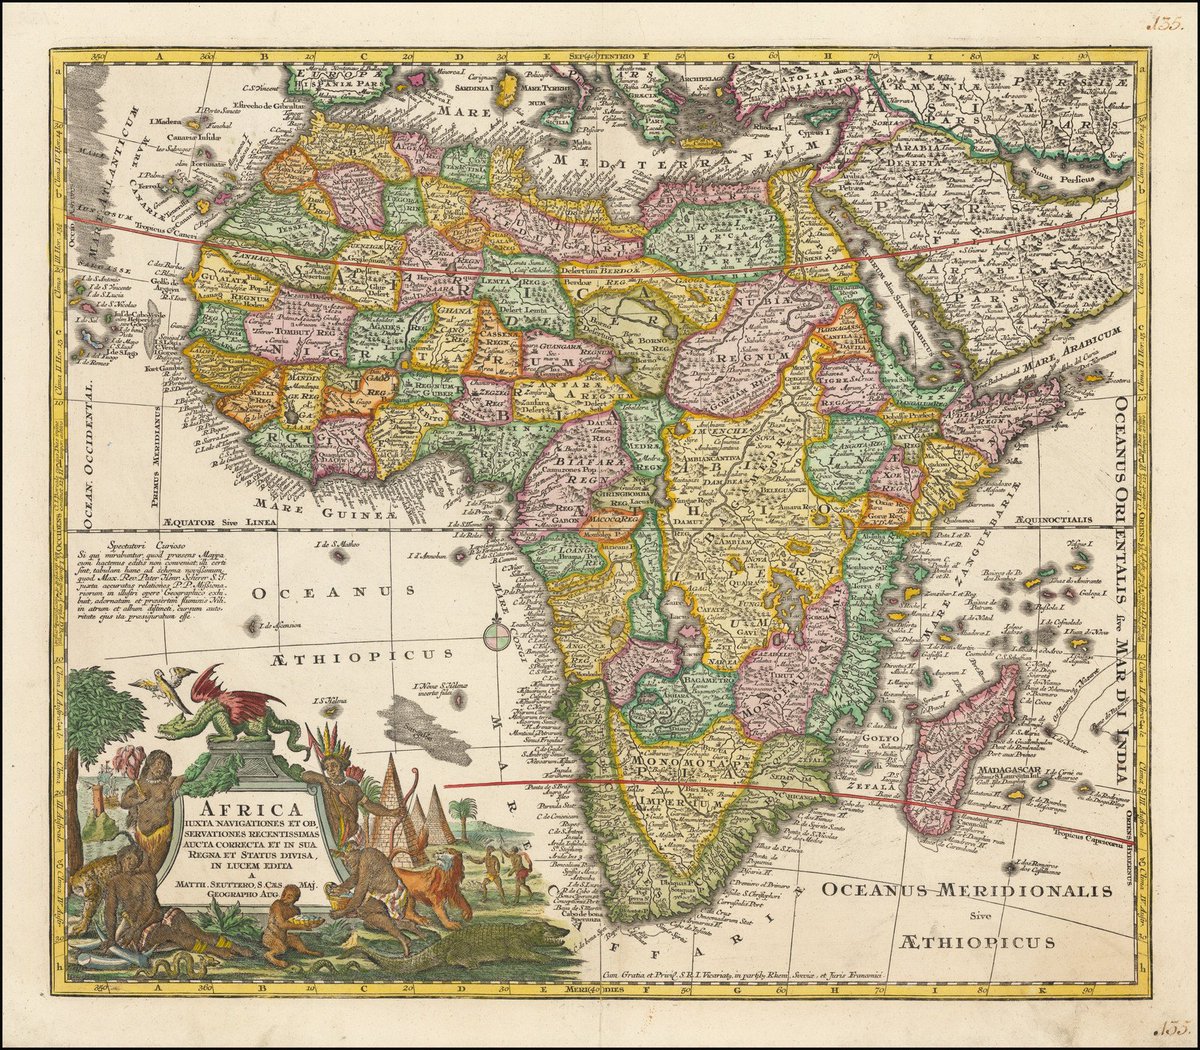 11. "Africa Iuxta Navigationes et Observationes Recentissimas Aucta" by Matthaeus Seutter (1740).